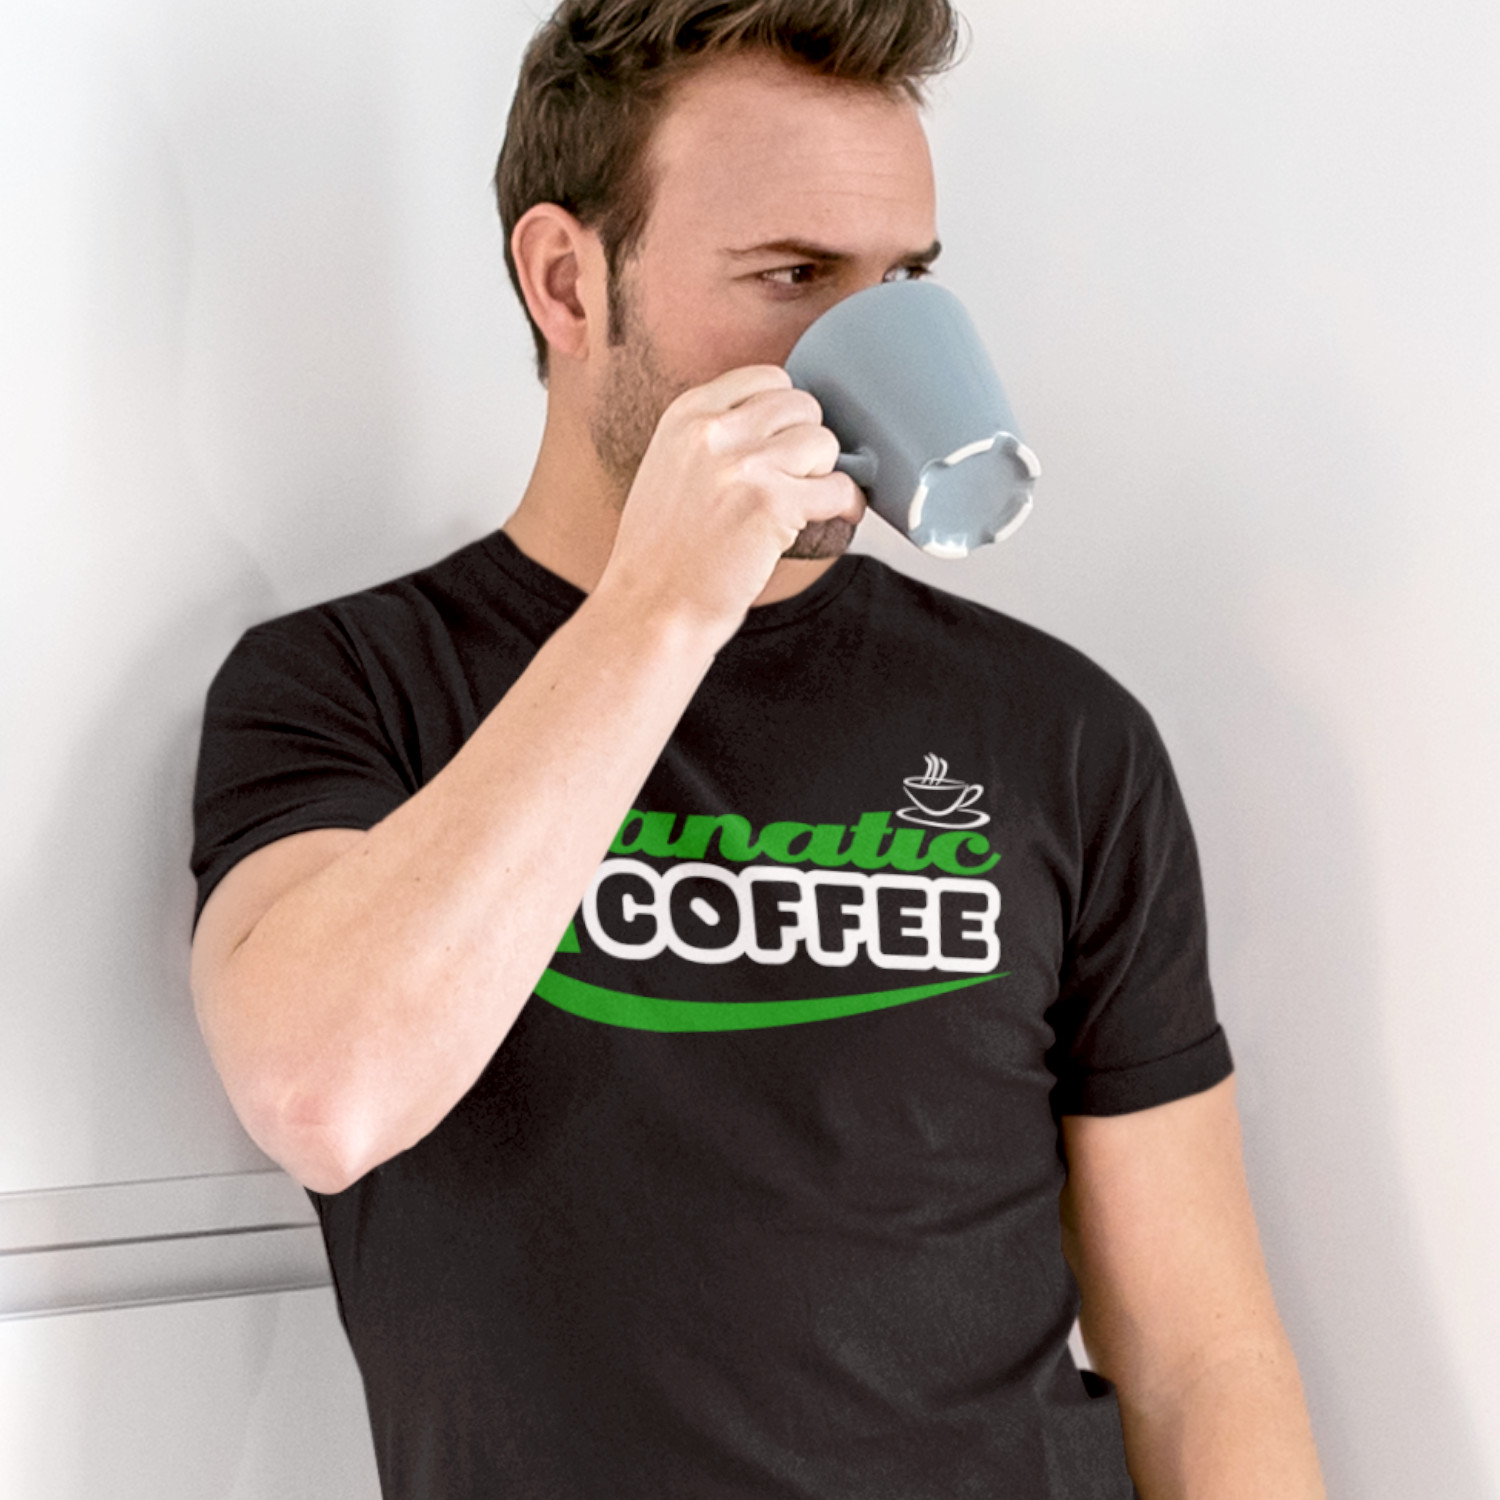 COFFEE FANATIC - pánske tričko